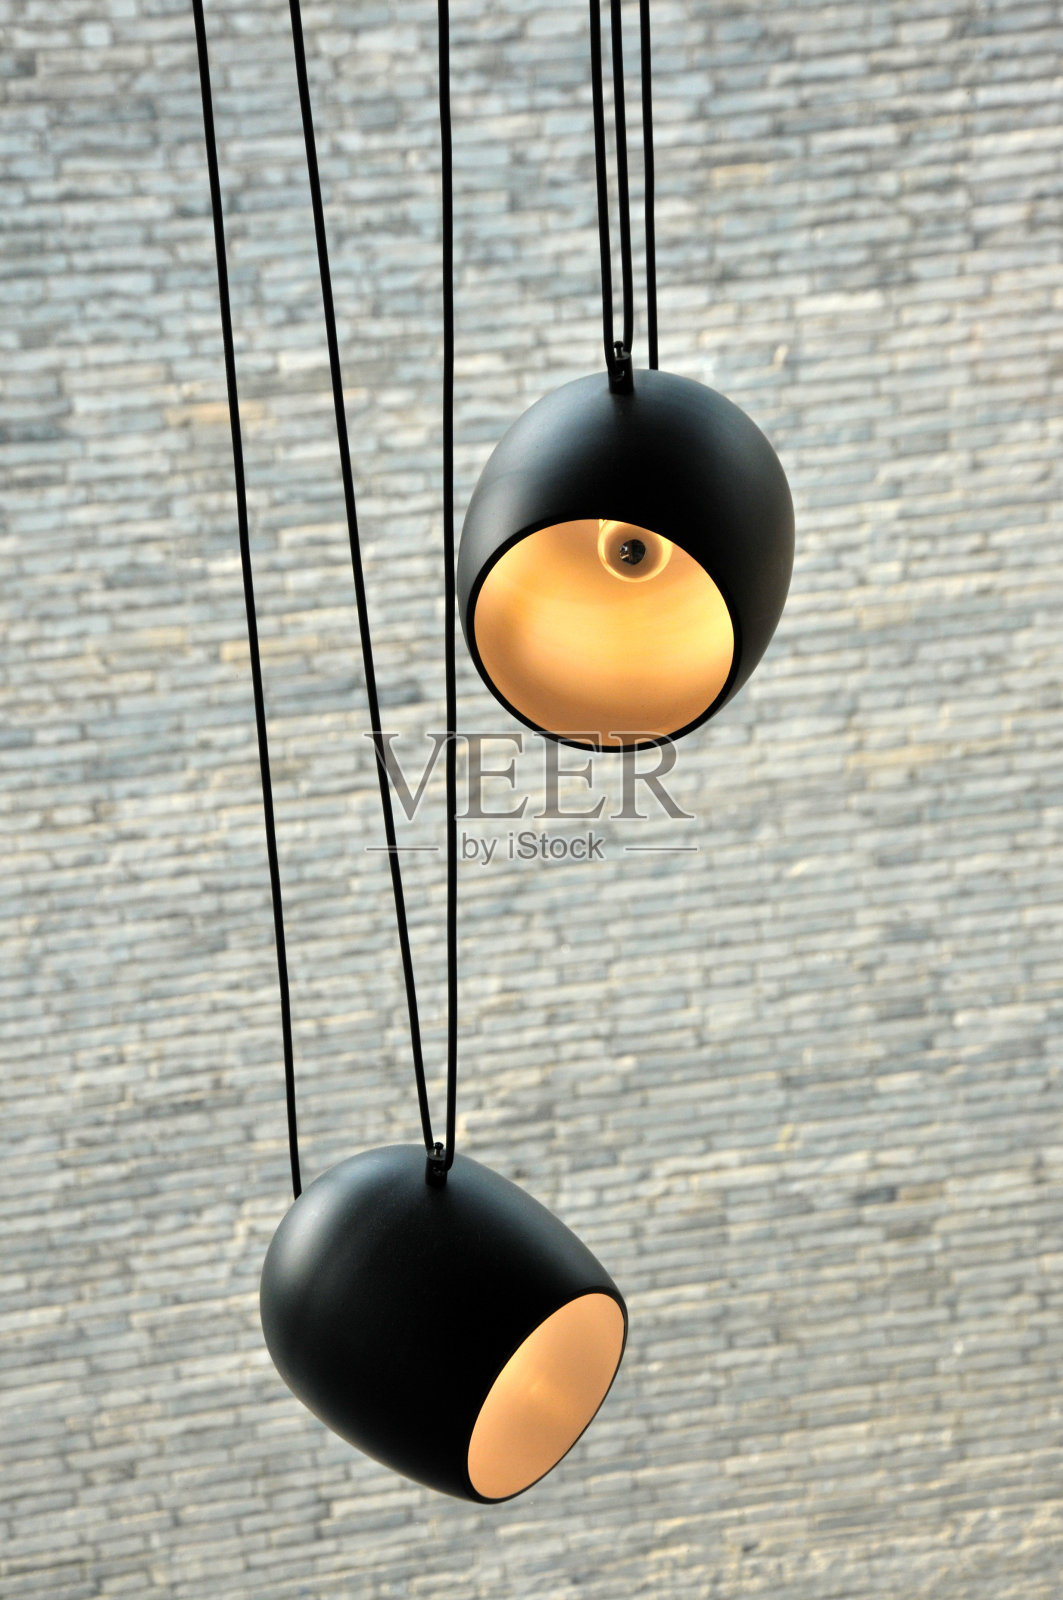 中国酒吧和中国寺庙天花板上悬挂的灯球照片摄影图片